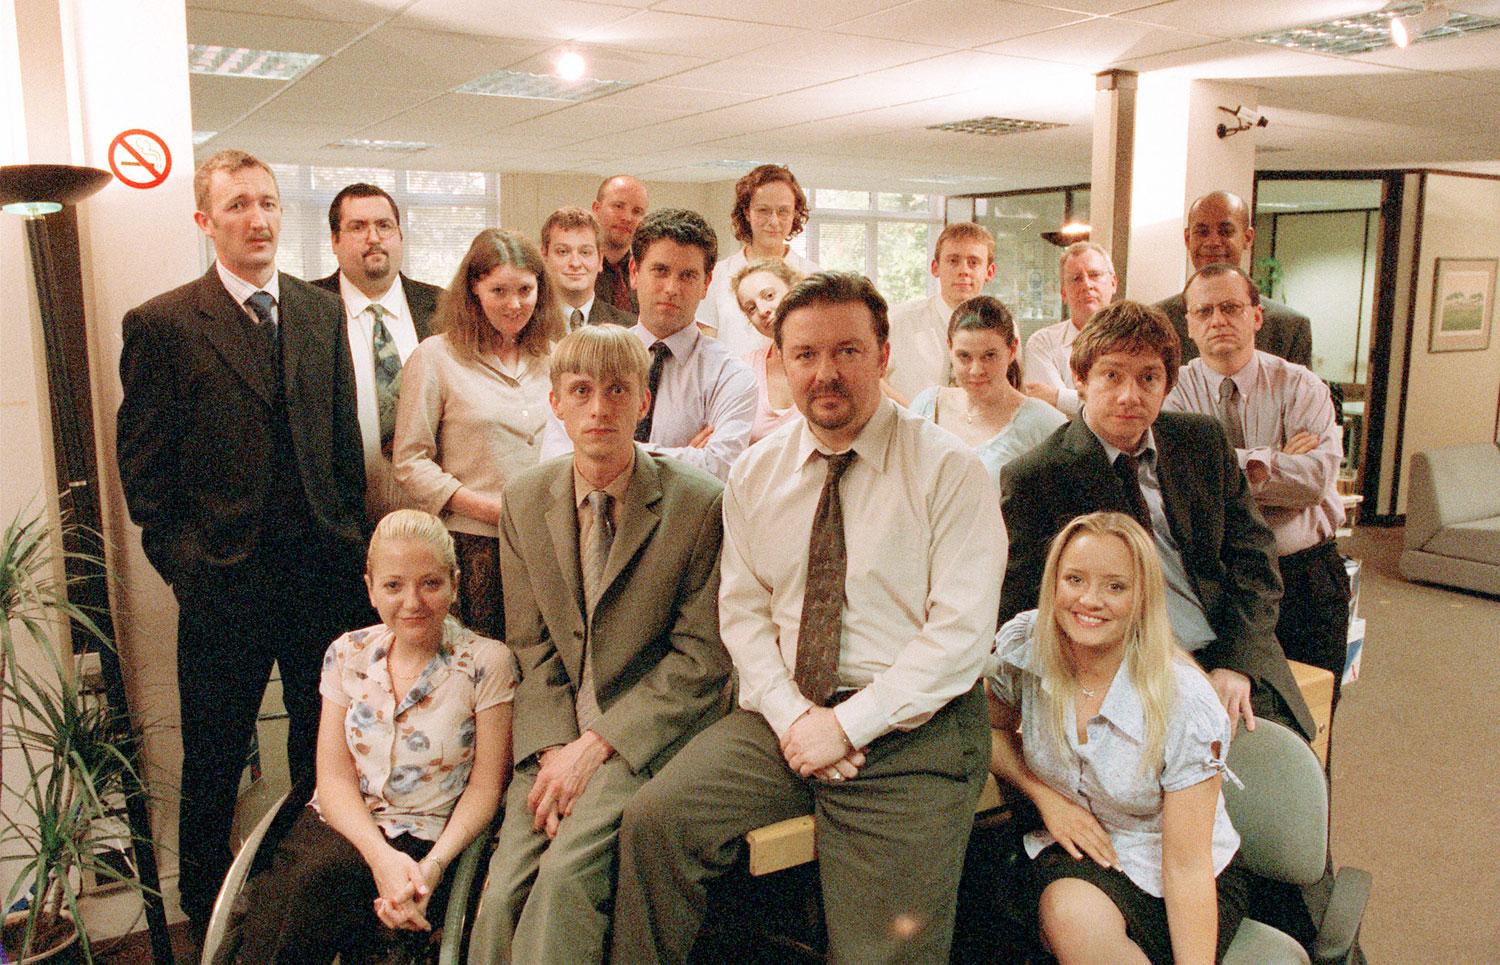 Legendarisk tv-serie ”The Office”.